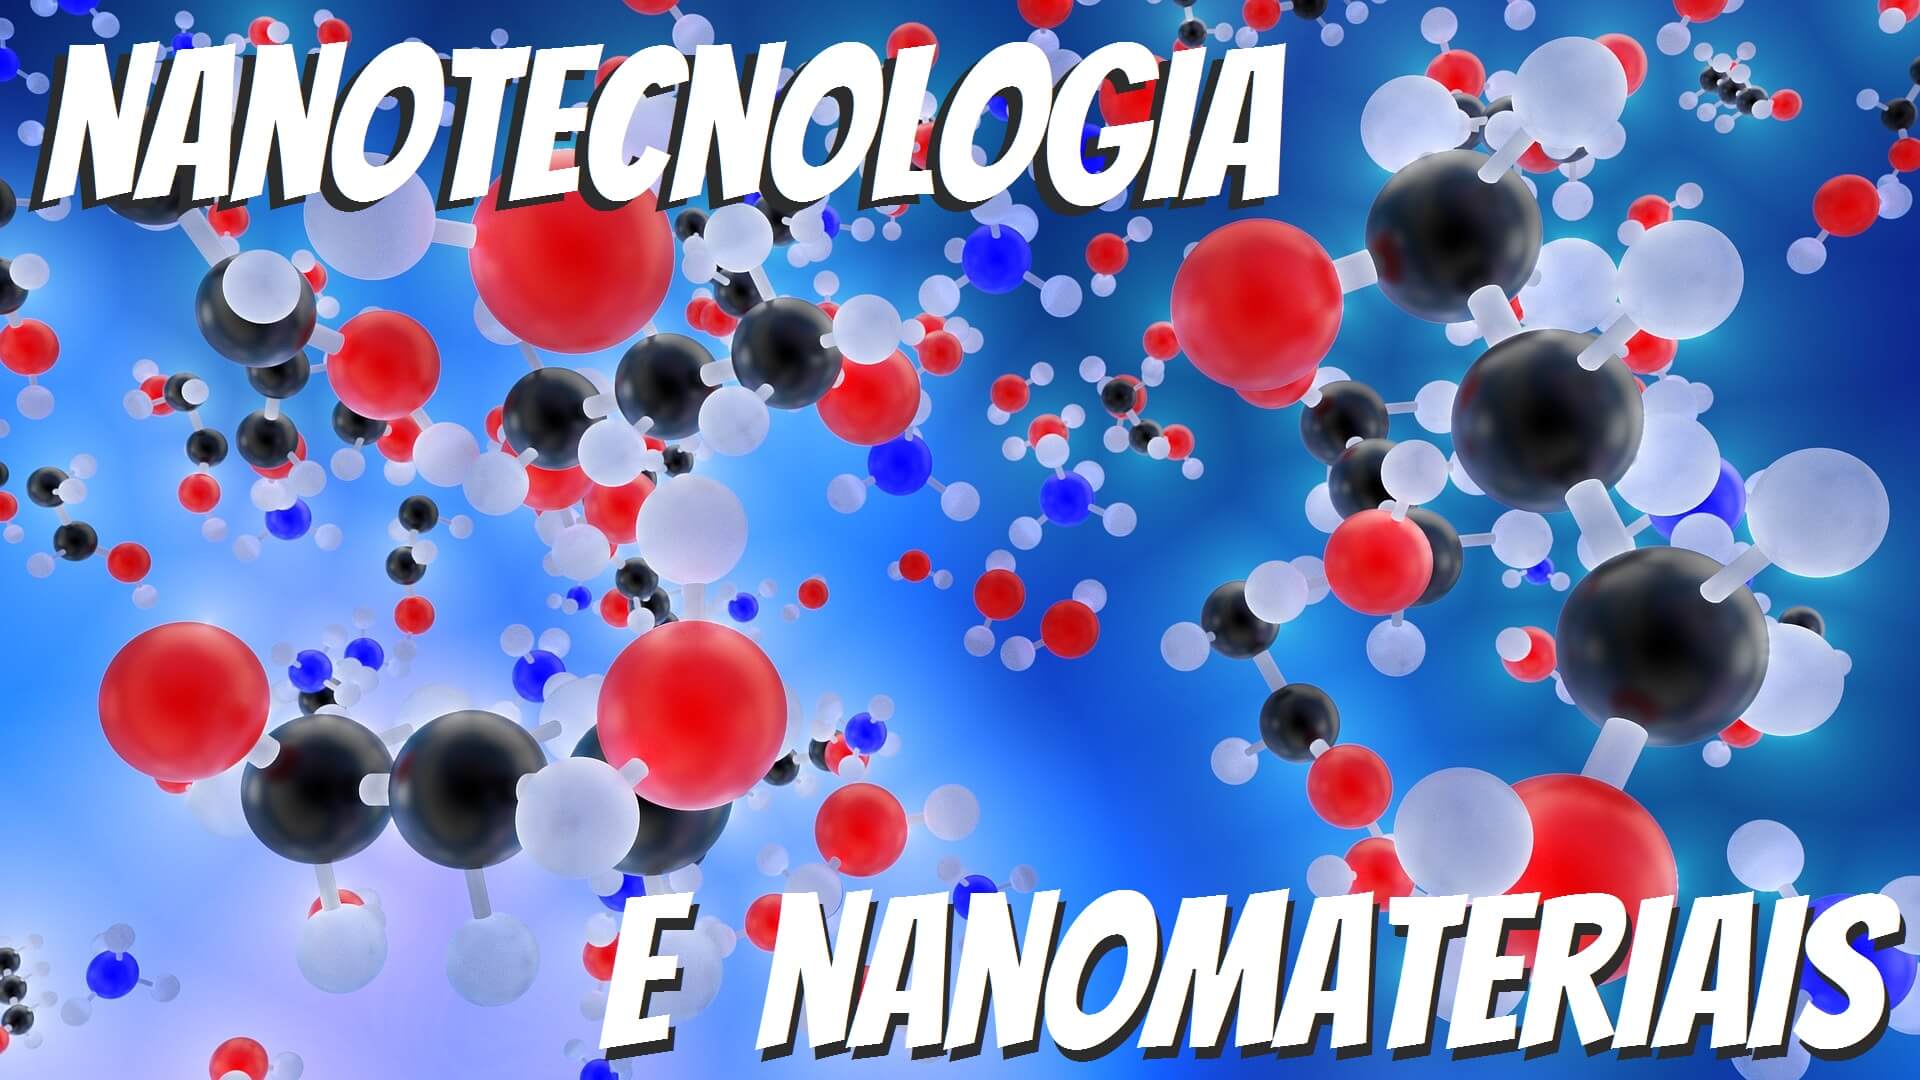 NANOTECNOLOGIA E NANOMATERIAIS (2)